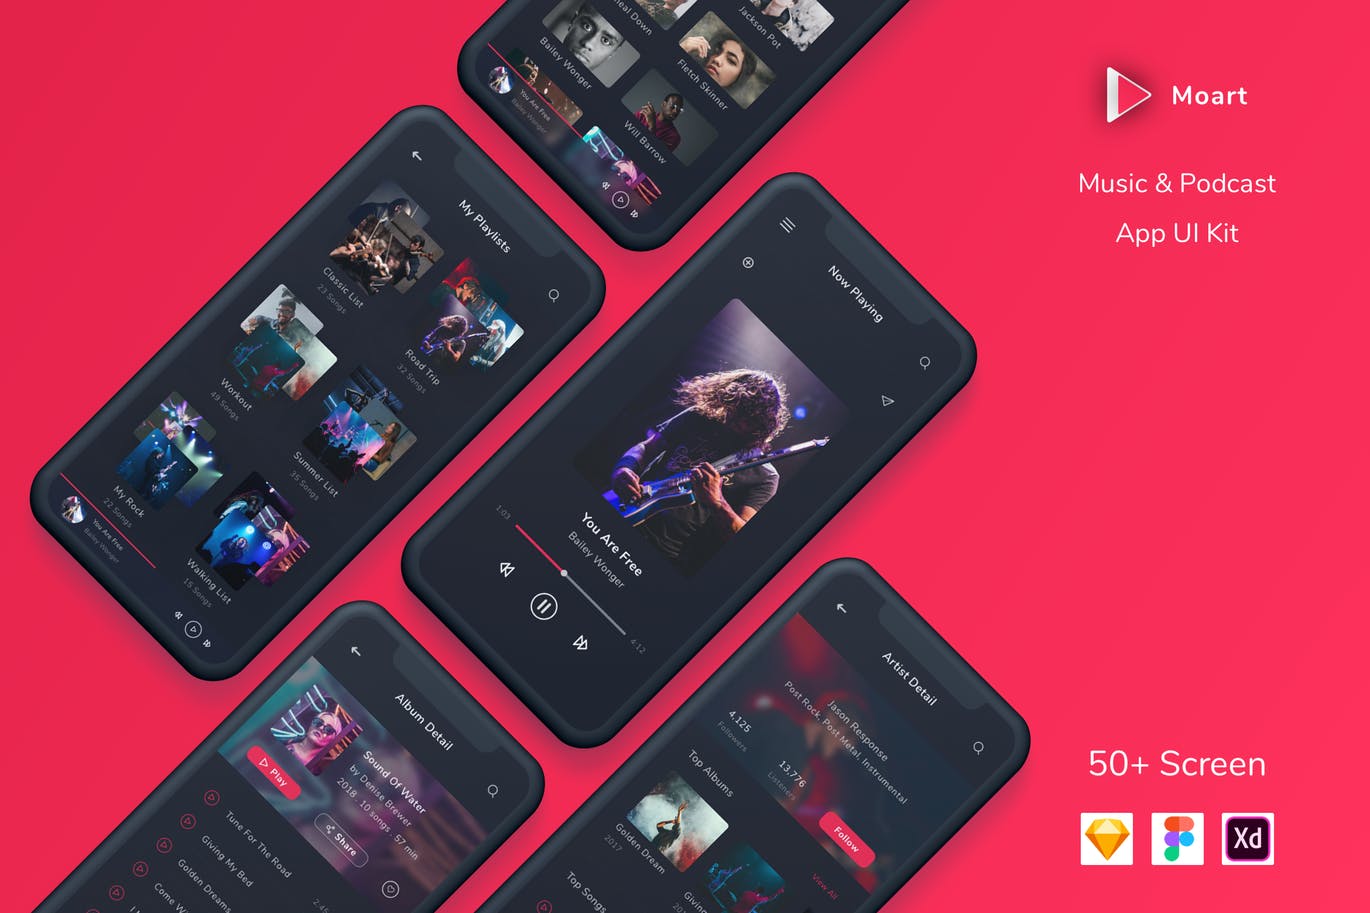 音乐和播客APP应用UI设计第一素材精选套件[FIG, SKETCH, XD] Moart – Music and Podcast App UI Kit插图